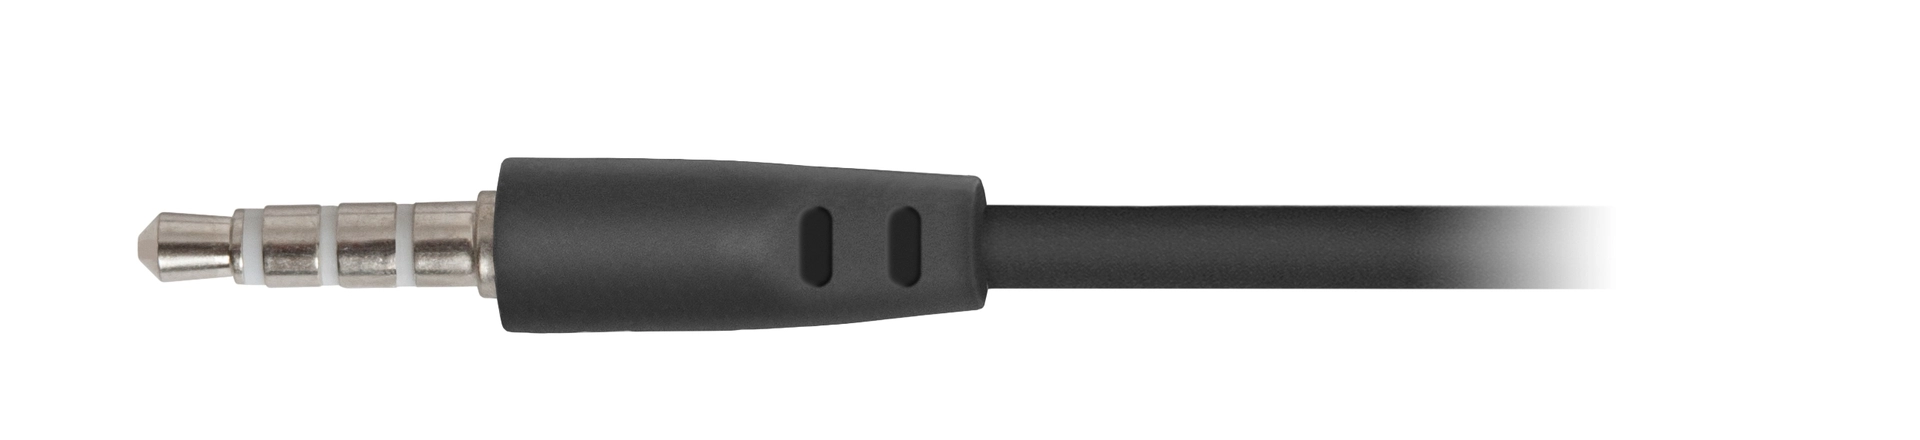 Наушники проводные DEFENDER Pulse 420 black/green (63422)